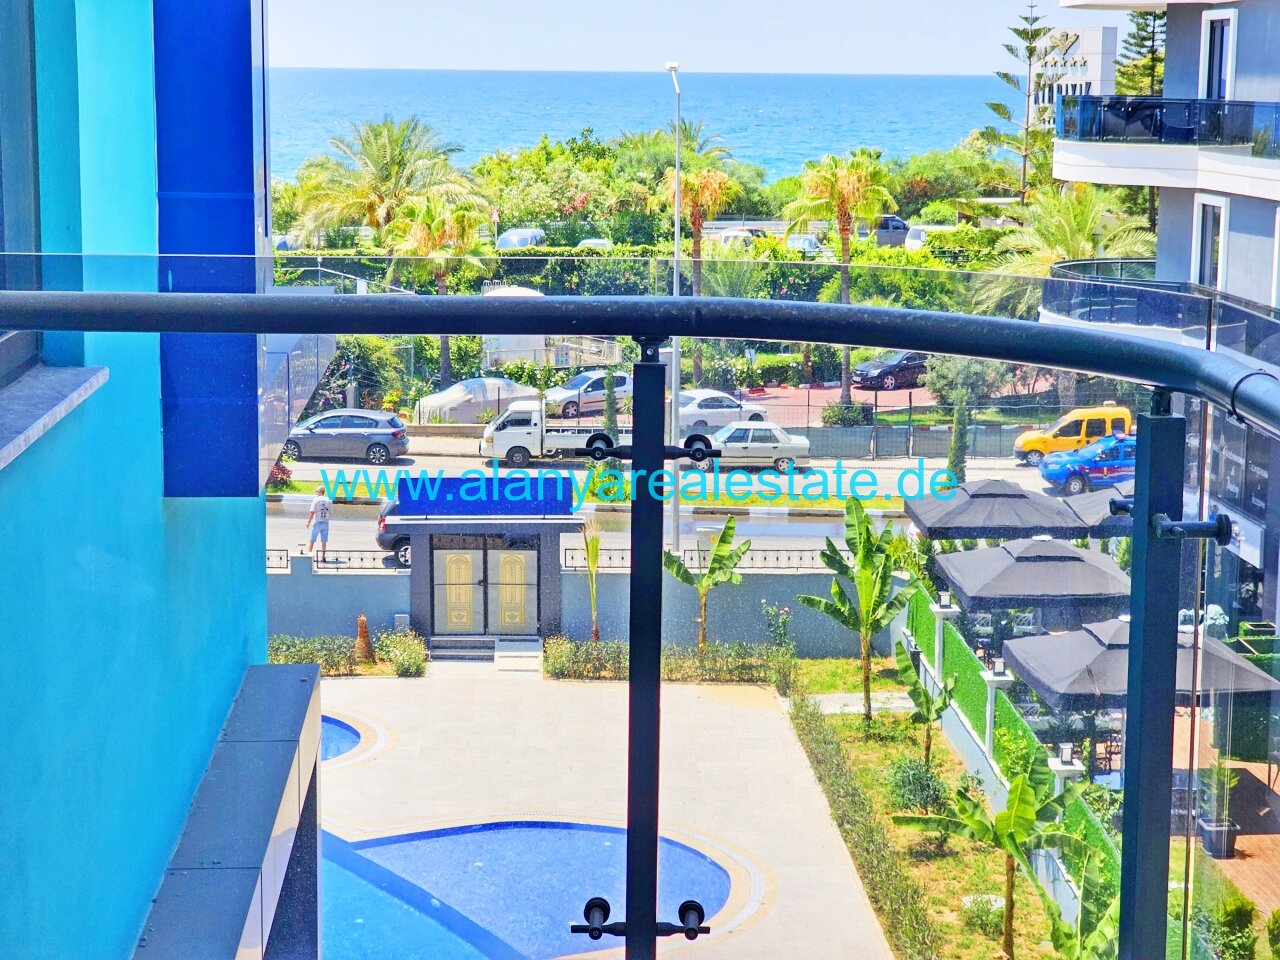 Brandneue Luxus Residence in Top Lage in direkter Strandnähe mit Pool